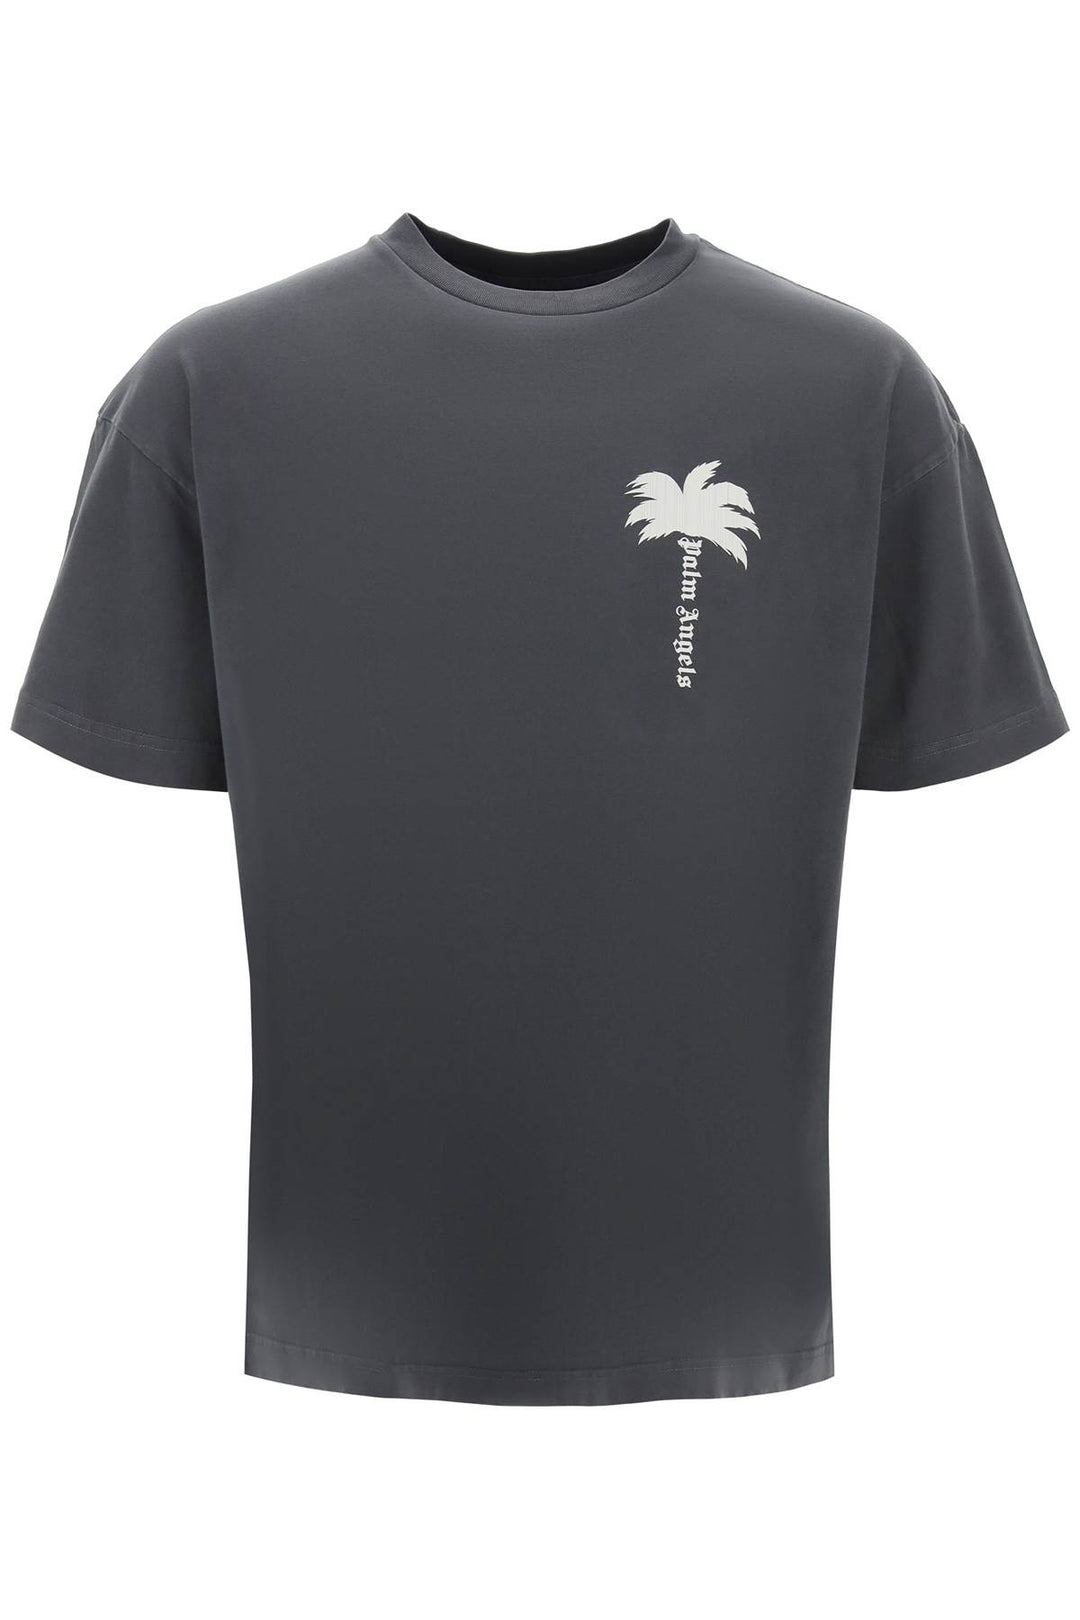 Palm Angels Tree Round Neck T Shirt   Grigio